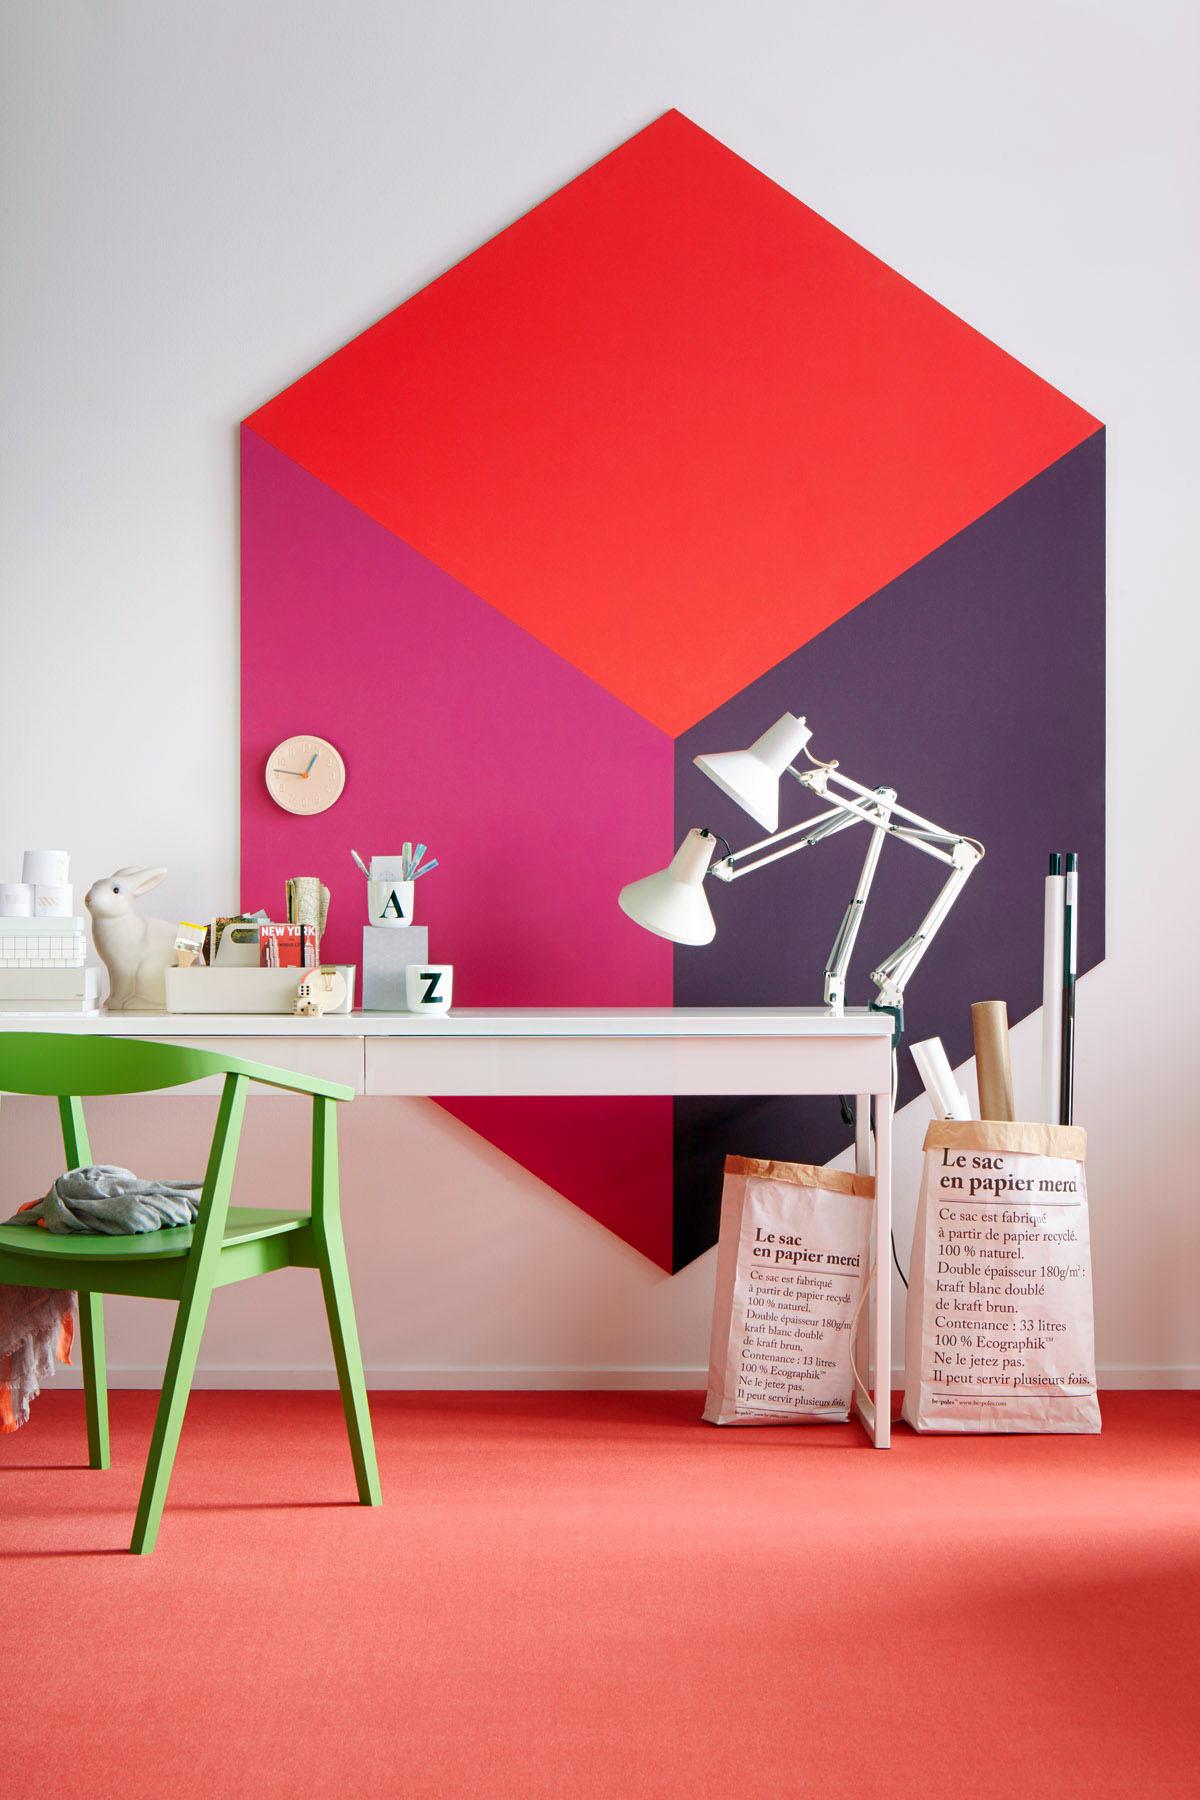 Farben würfeln #arbeitsplatz #teppich #wandschmuck #designwand ©Ilona Habben/Schöner Wohnen Kollektion